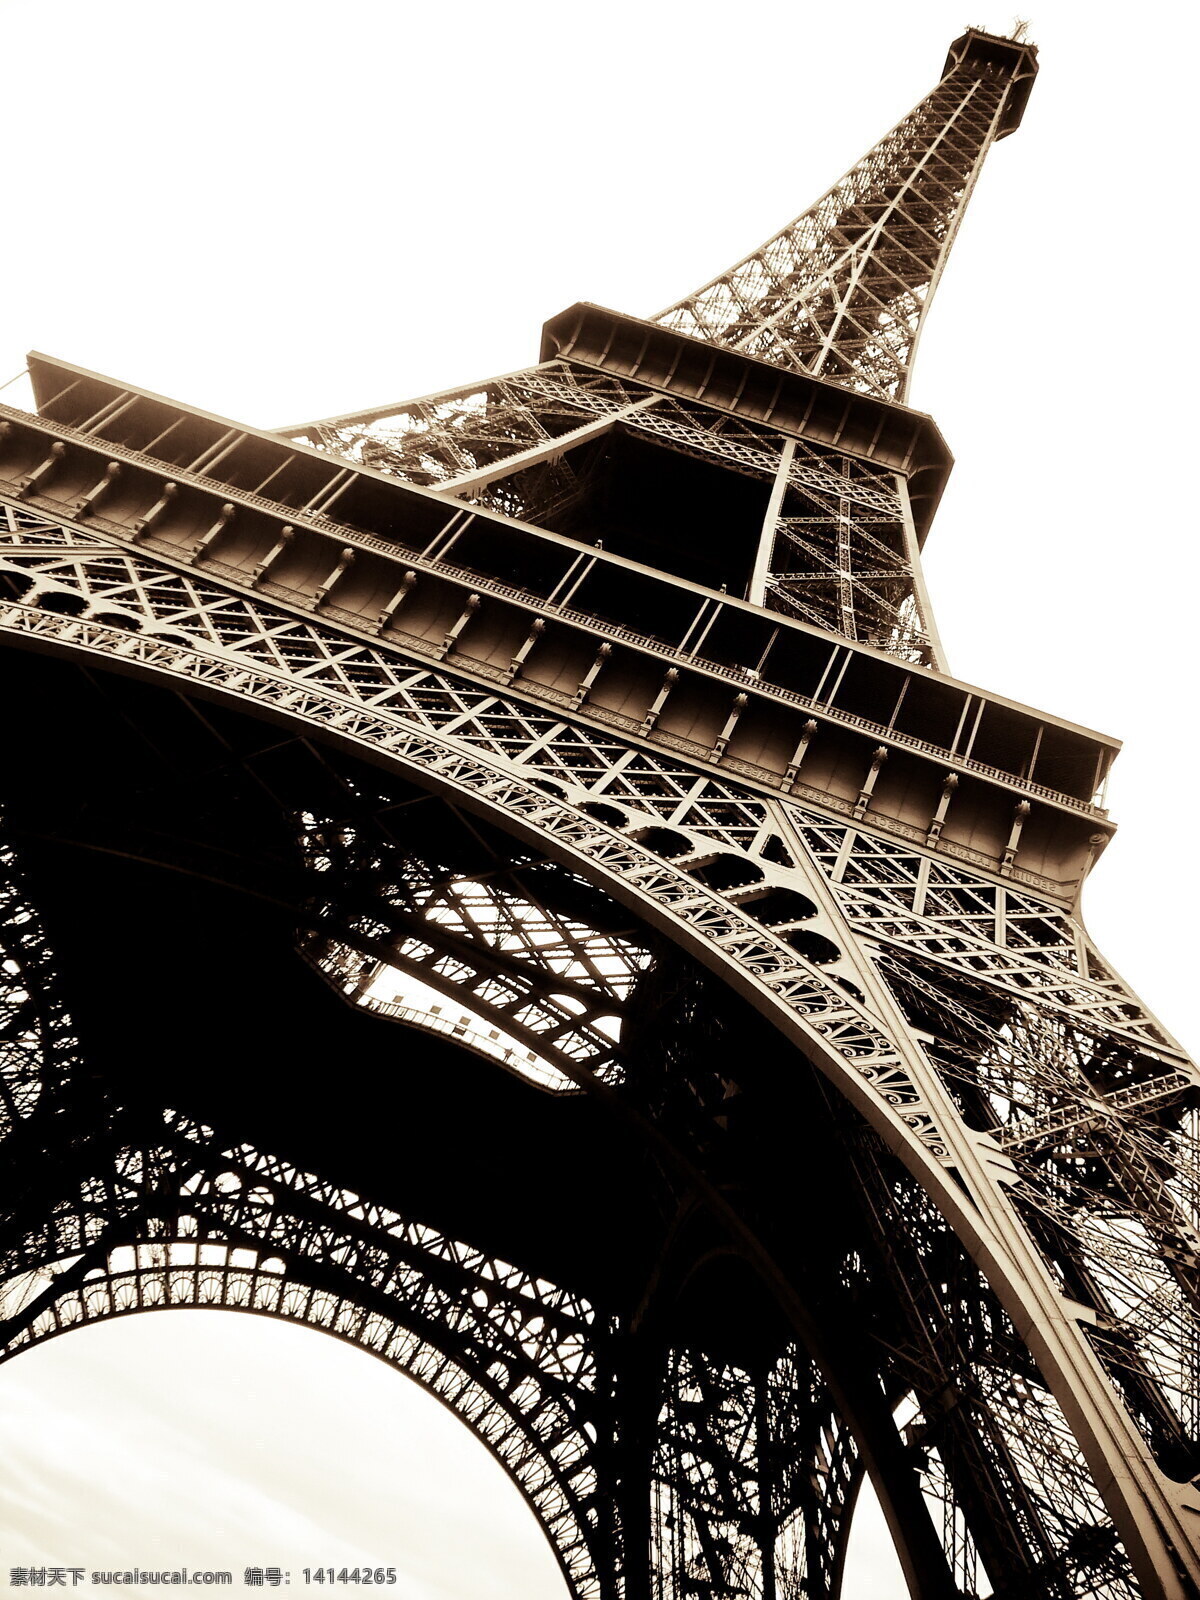 唯美 巴黎埃菲尔铁塔 巴黎 埃菲尔铁塔 城市 建筑 巴黎铁塔